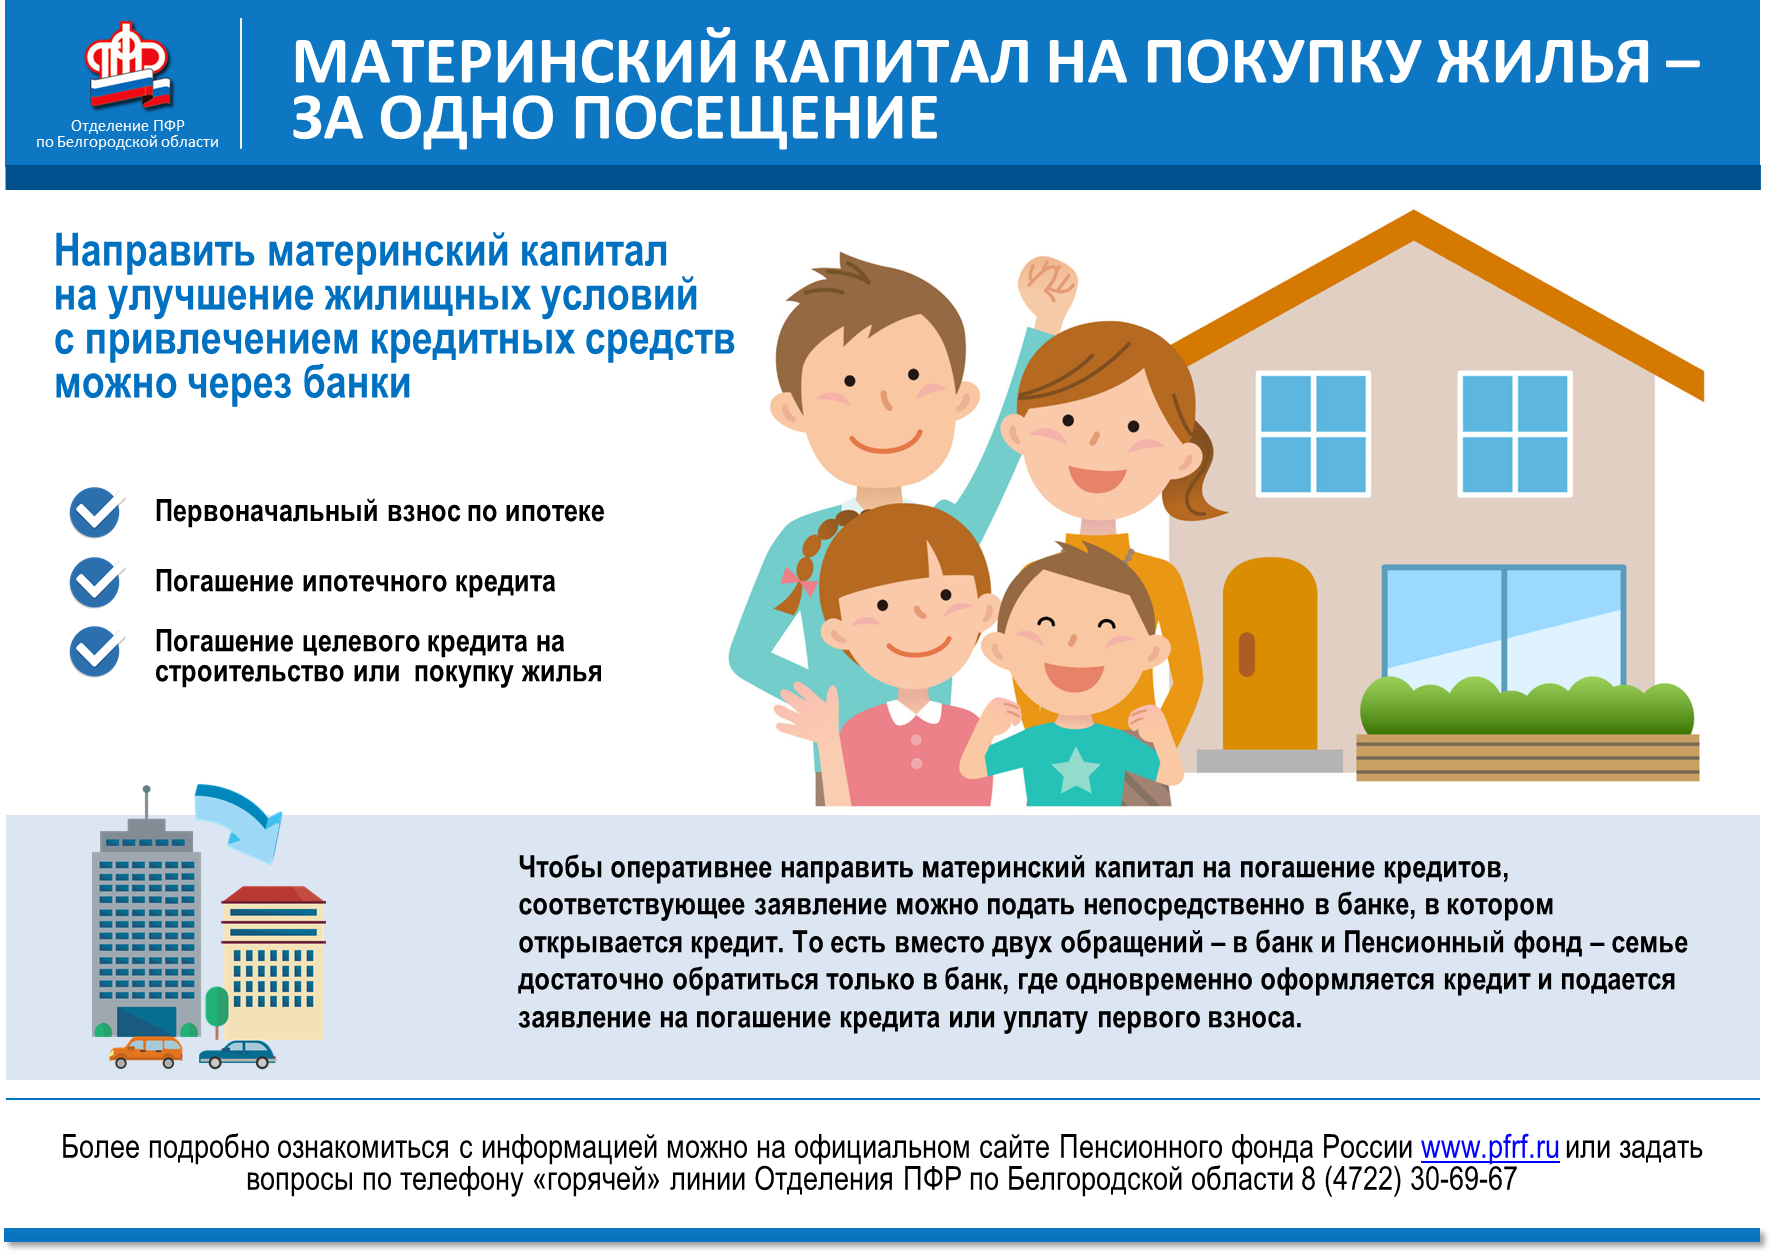 Как правильно вложить государственную выплату в жилье? пошаговая инструкция покупки квартиры с материнским капиталом